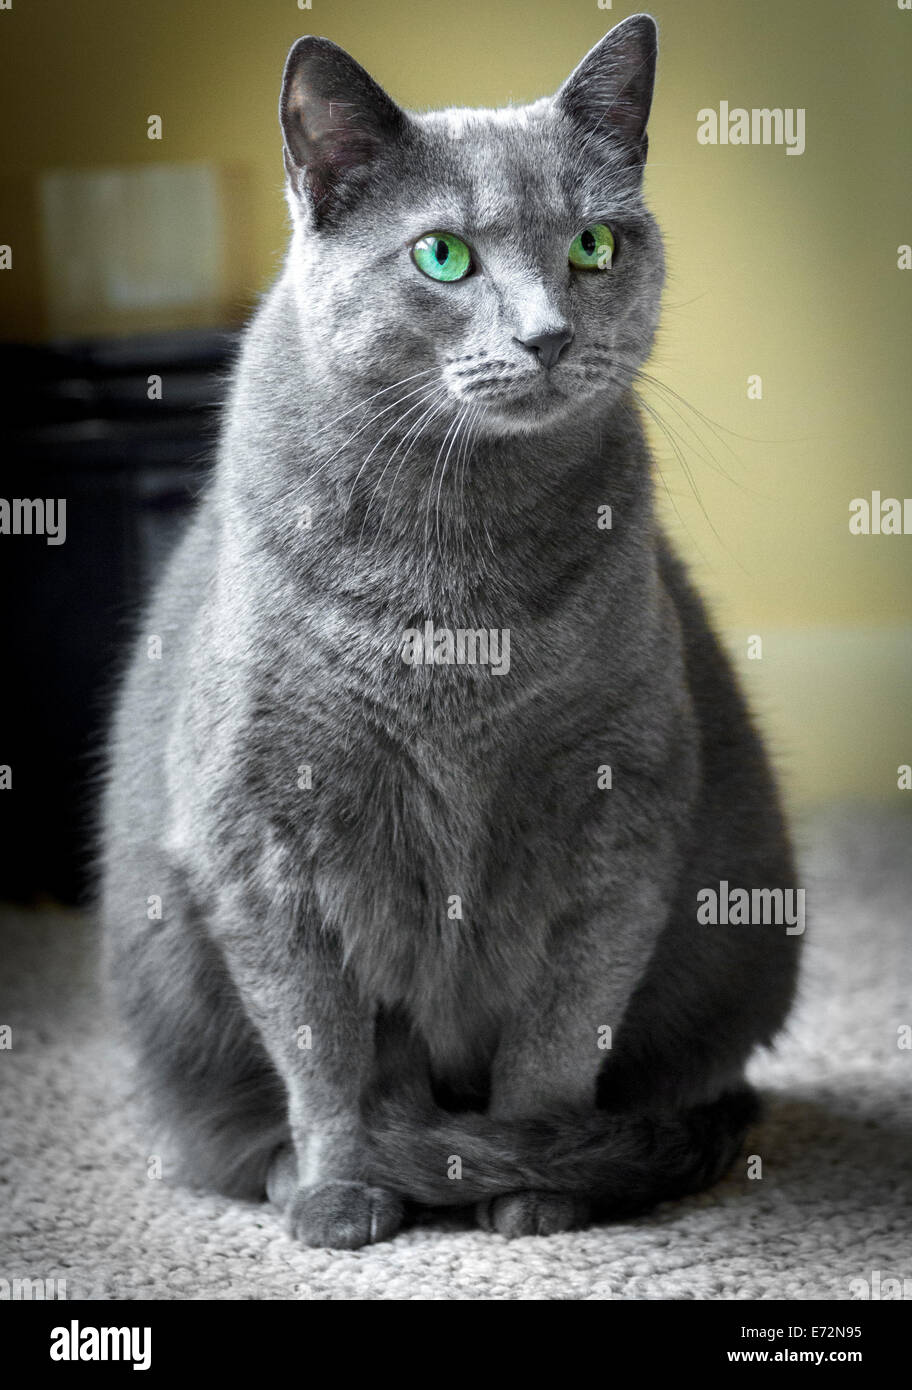 Portrait d'un chat bleu russe avec teal green eyes, posant à l'intérieur avec sa queue enroulée autour de ses jambes. Banque D'Images